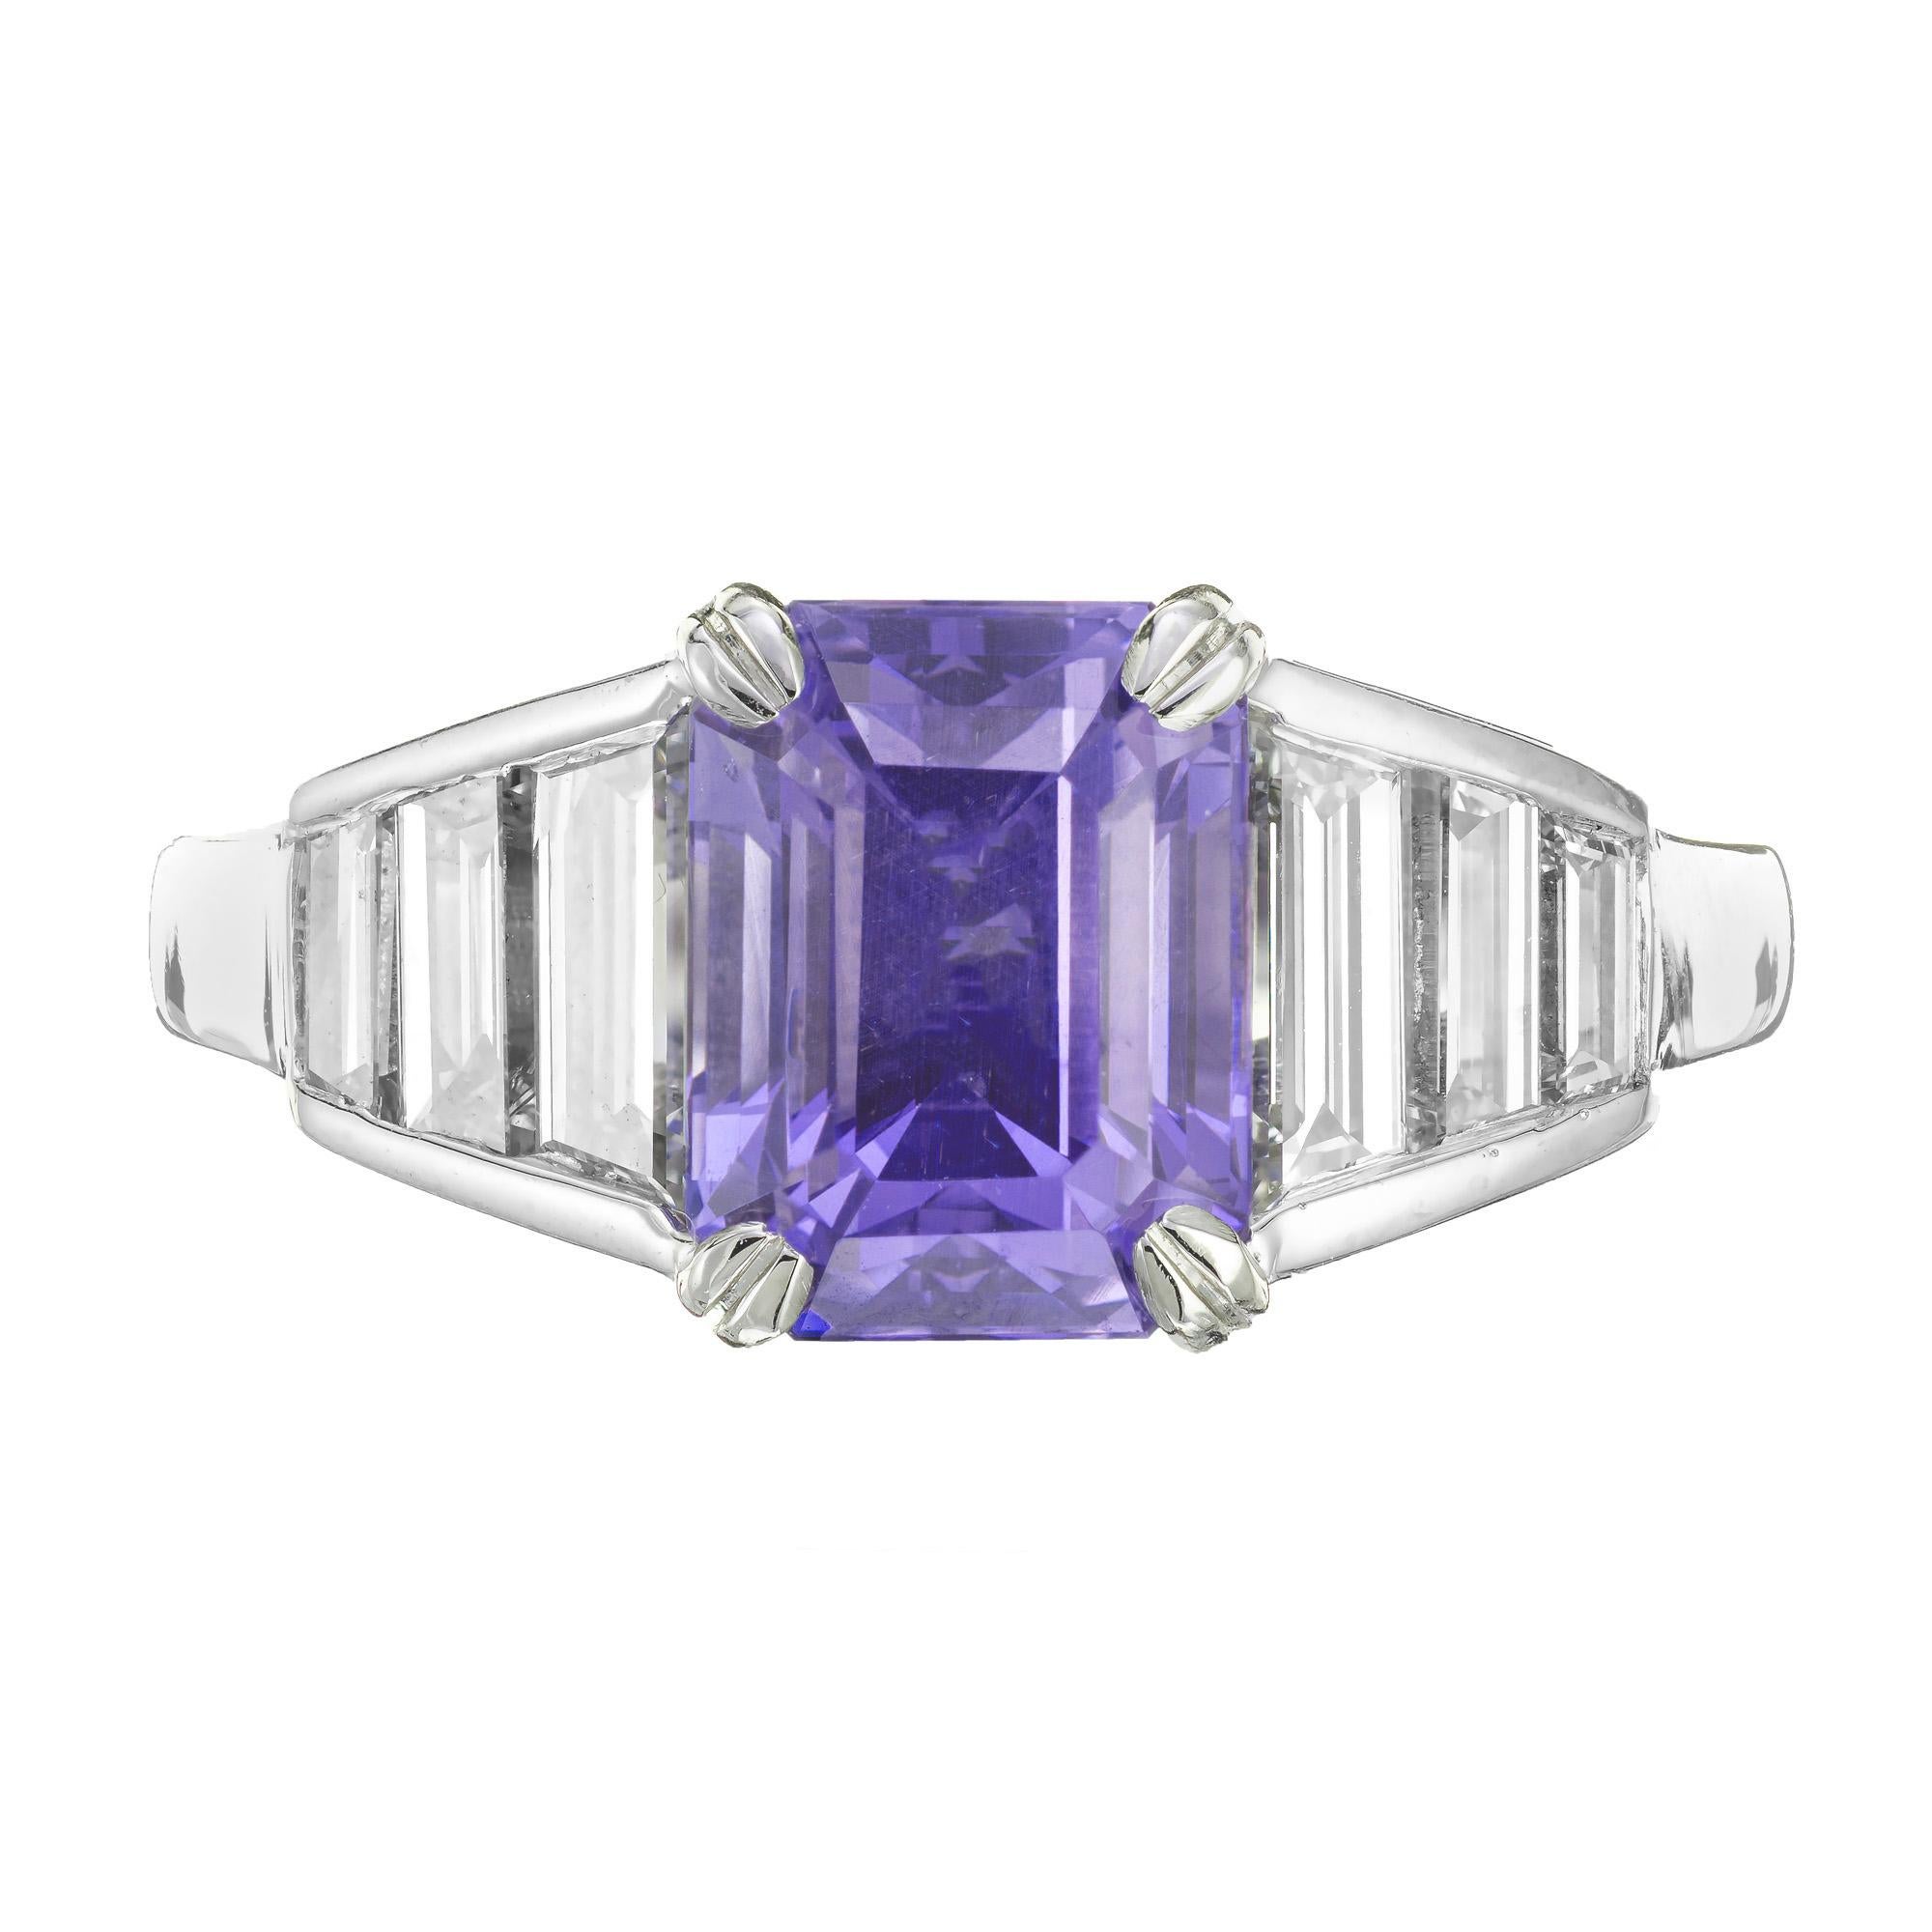 Smaragdfarbener Verlobungsring mit Saphir und Diamant im Stufenschliff. GIA-zertifizierter natürlicher violettblauer Saphir in einer Platinfassung mit 6 Baguette-Diamanten im Smaragdschliff. 

1 Smaragd im Stufenschliff, violettblauer Saphir,